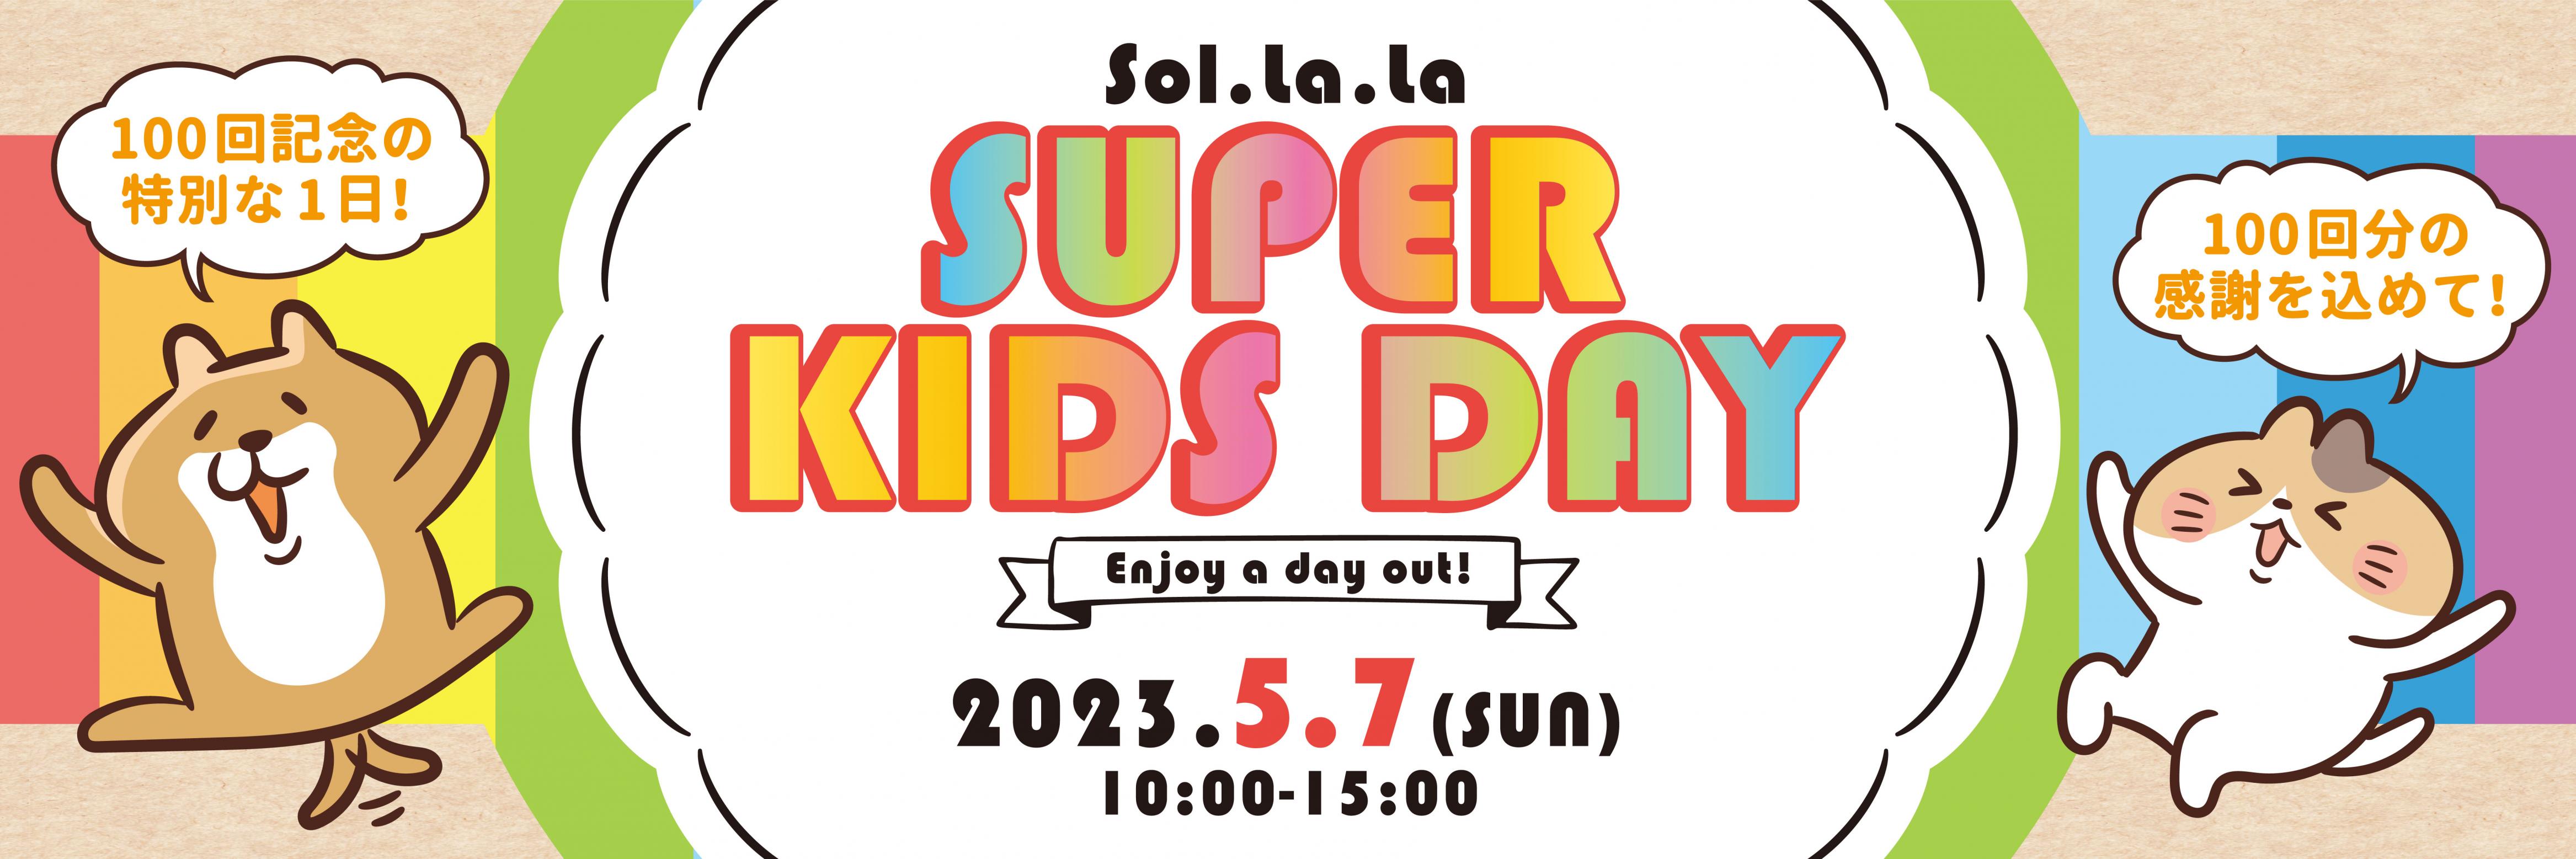 5月7日（日曜日）は「Sol・la・la SUPER KIDS DAY」を開催します！